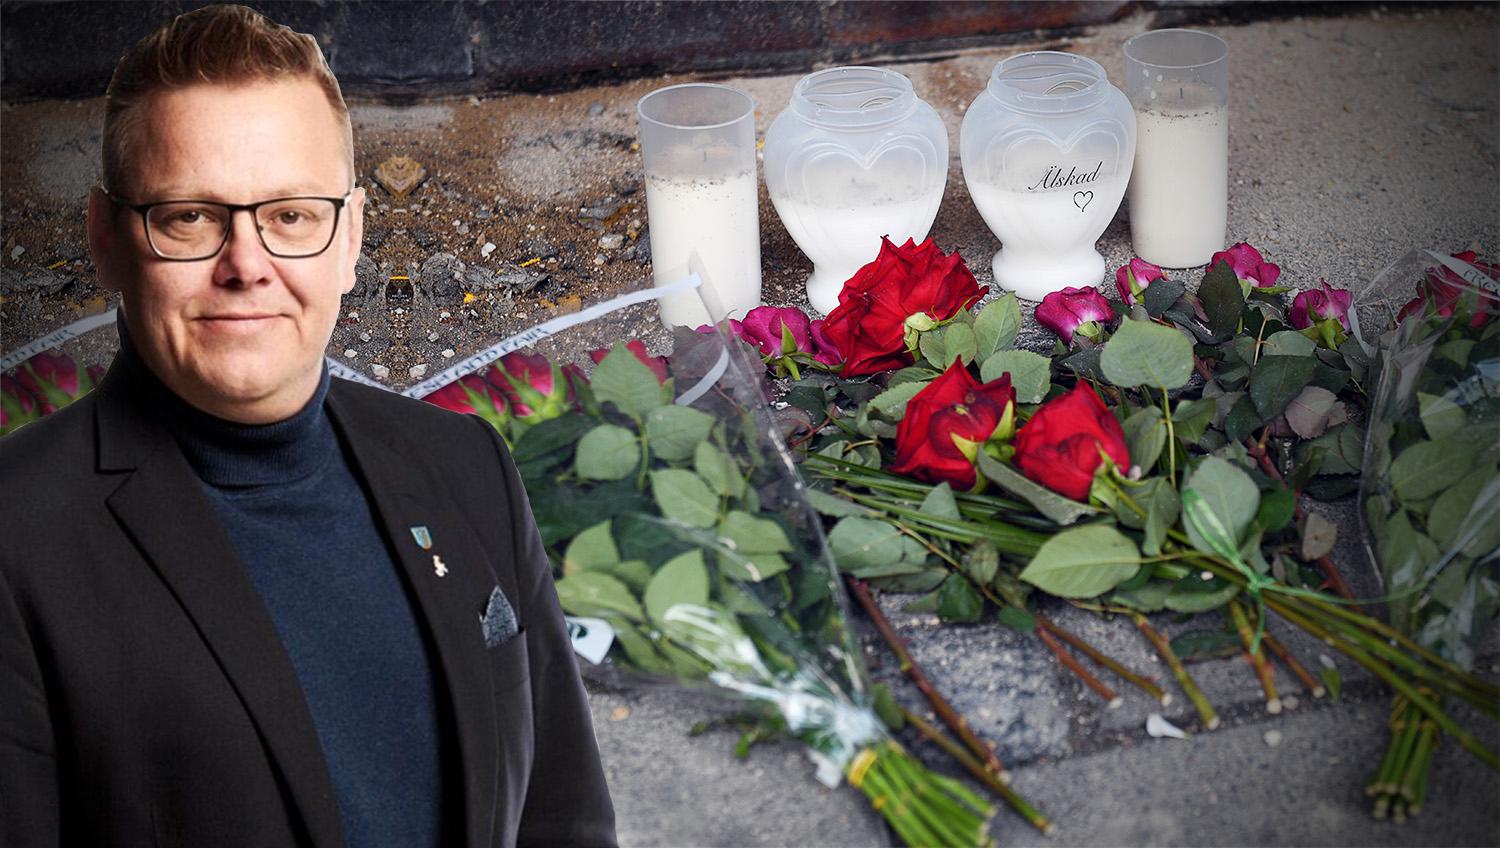 Våldet i Malmö har blivit grovt och många medborgare reagerar knappt längre på det, skriver debattören.